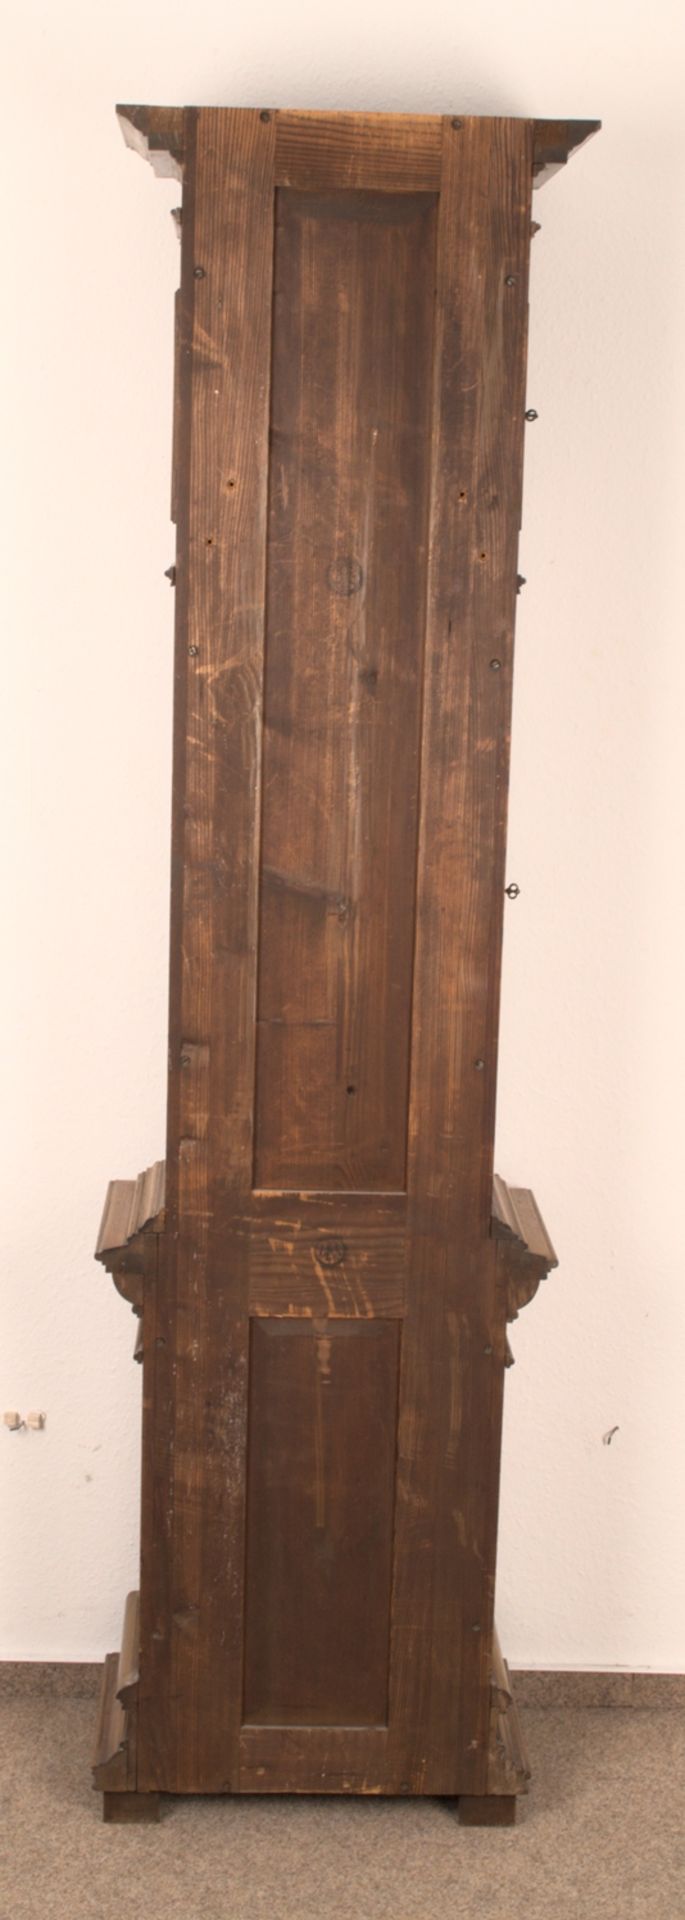 Antike Bodenstanduhr, Historismus um 1880/90, zweigewichtiges, ungeprüftes, mechanisches Uhrwerk der - Image 25 of 27